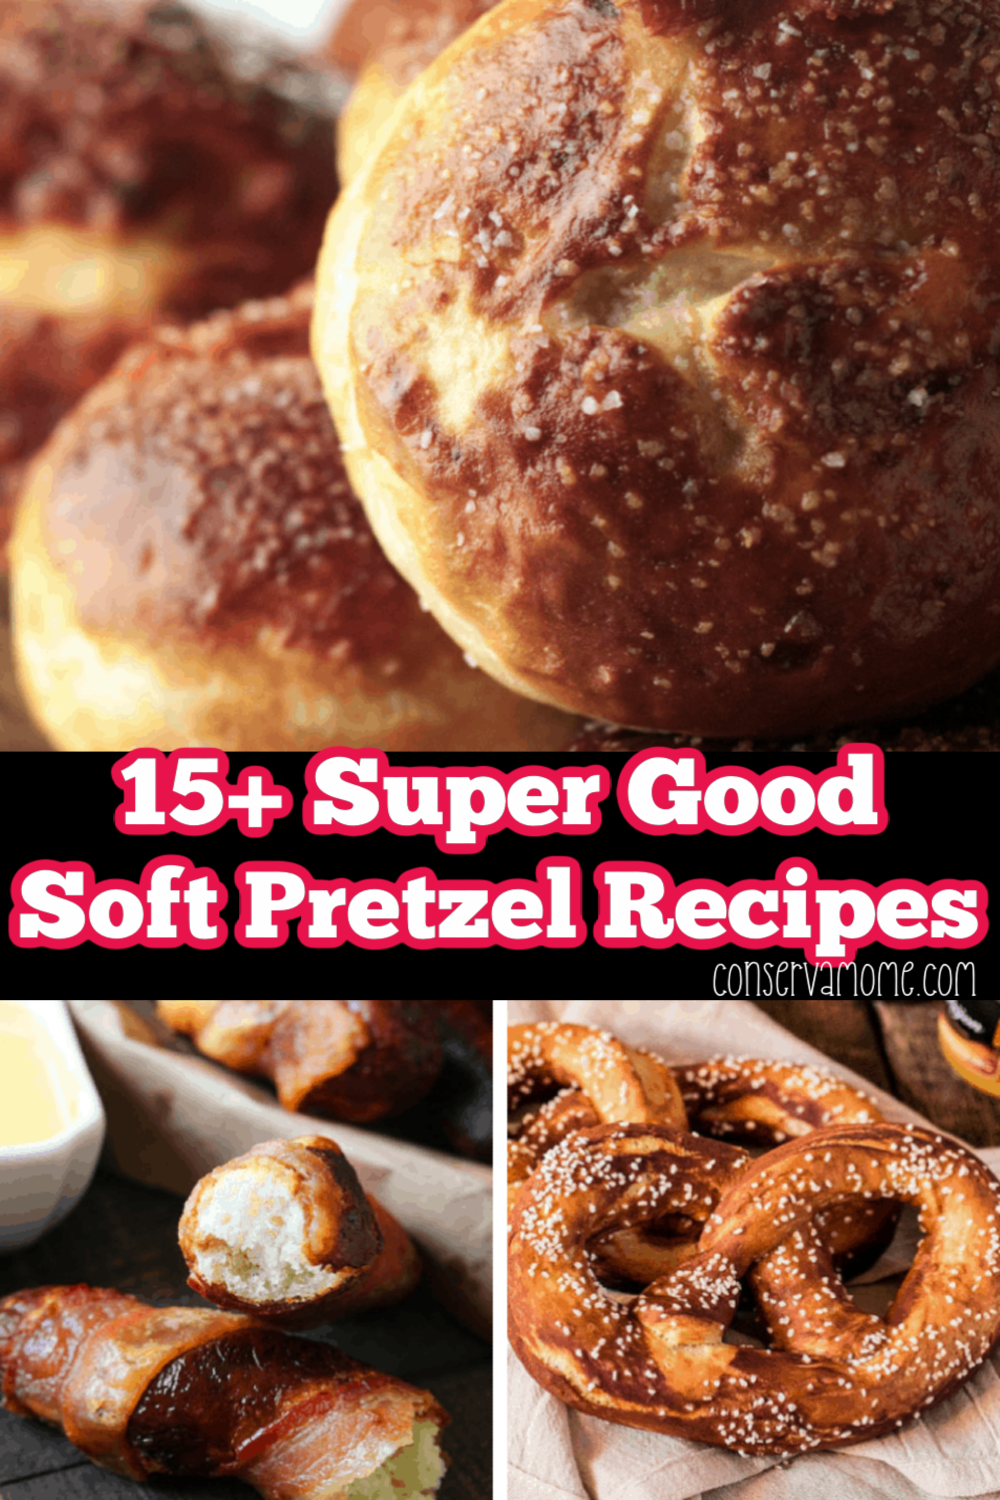 15+ Super Good Soft Pretzel Recipes